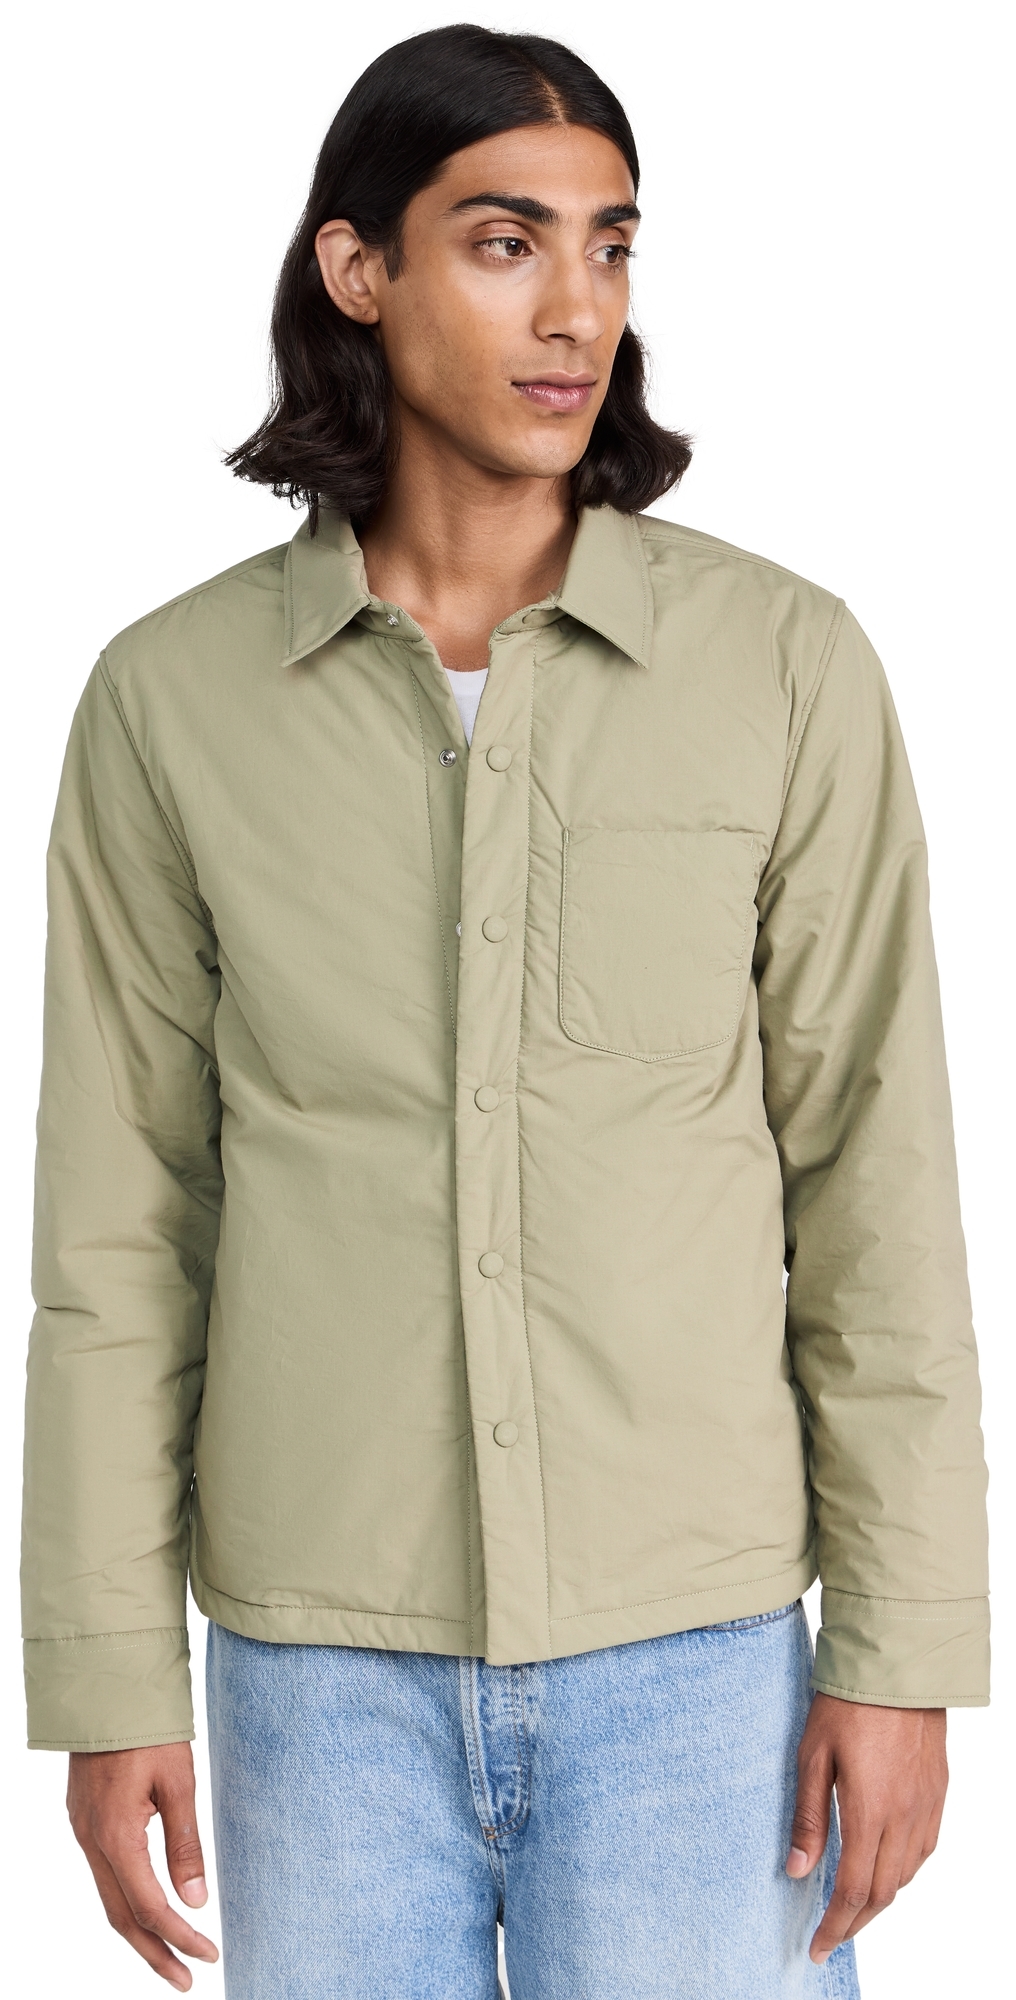 Buy Officine Generale Harring Pad Ovs Pce Dye Jacket Online | Coshio